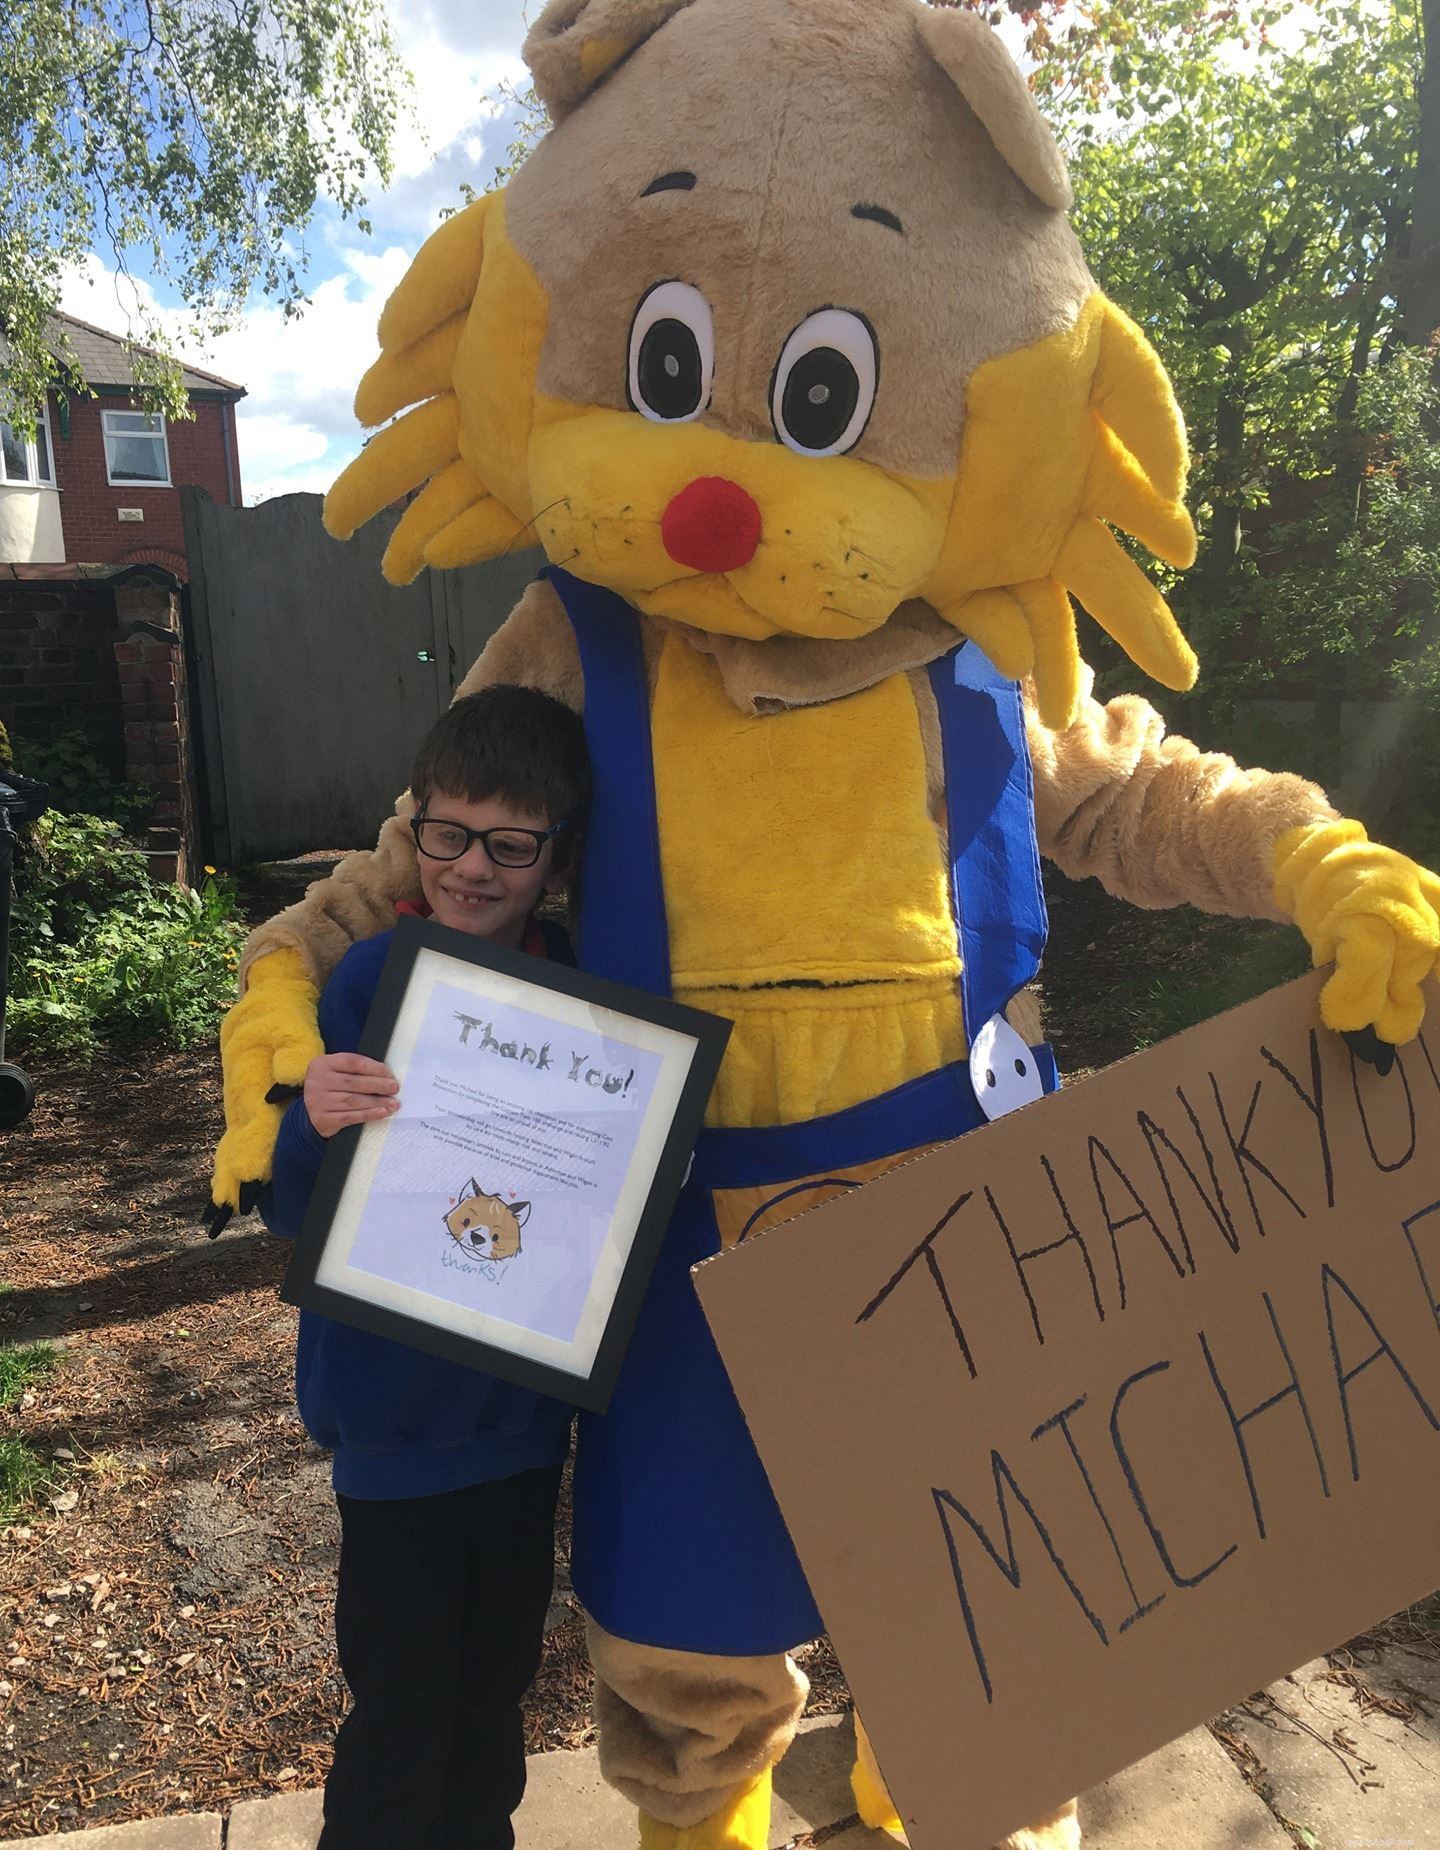 Michael Hart, 11 ans, de Wigan, a diverti les chats et les abonnés sur Facebook afin de collecter 300 £ pour une association caritative qui lui tient à cœur